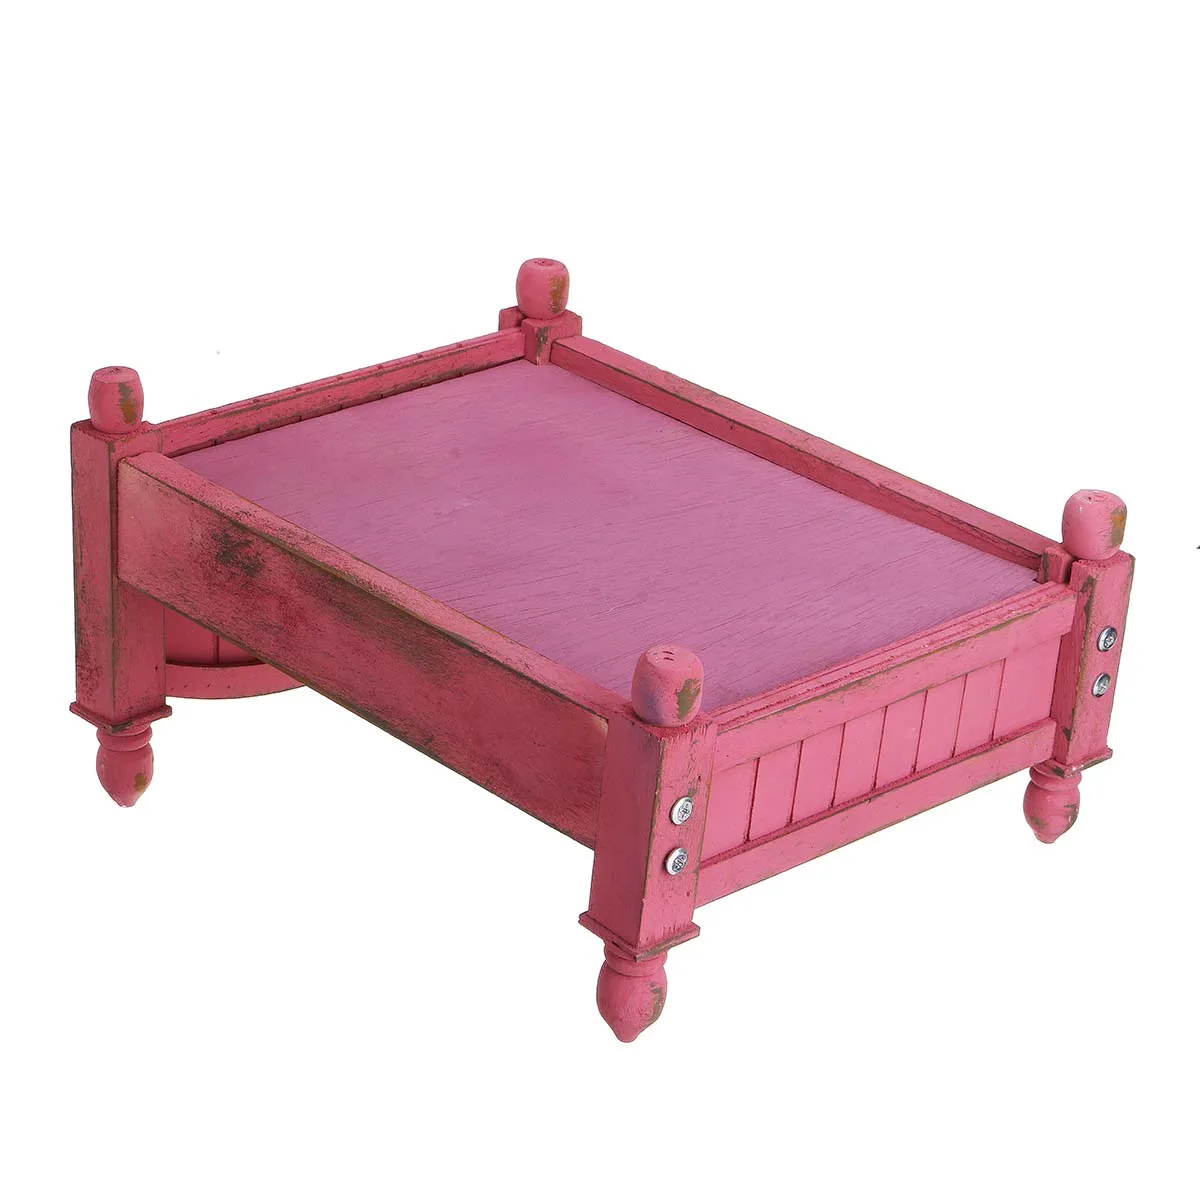 Bioby розовый/фиолетовый/зеленый/небесно-голубой фон для фотосъемки новорожденных реквизит ретро деревянная кровать для студийной фотосъемки детские кроватки